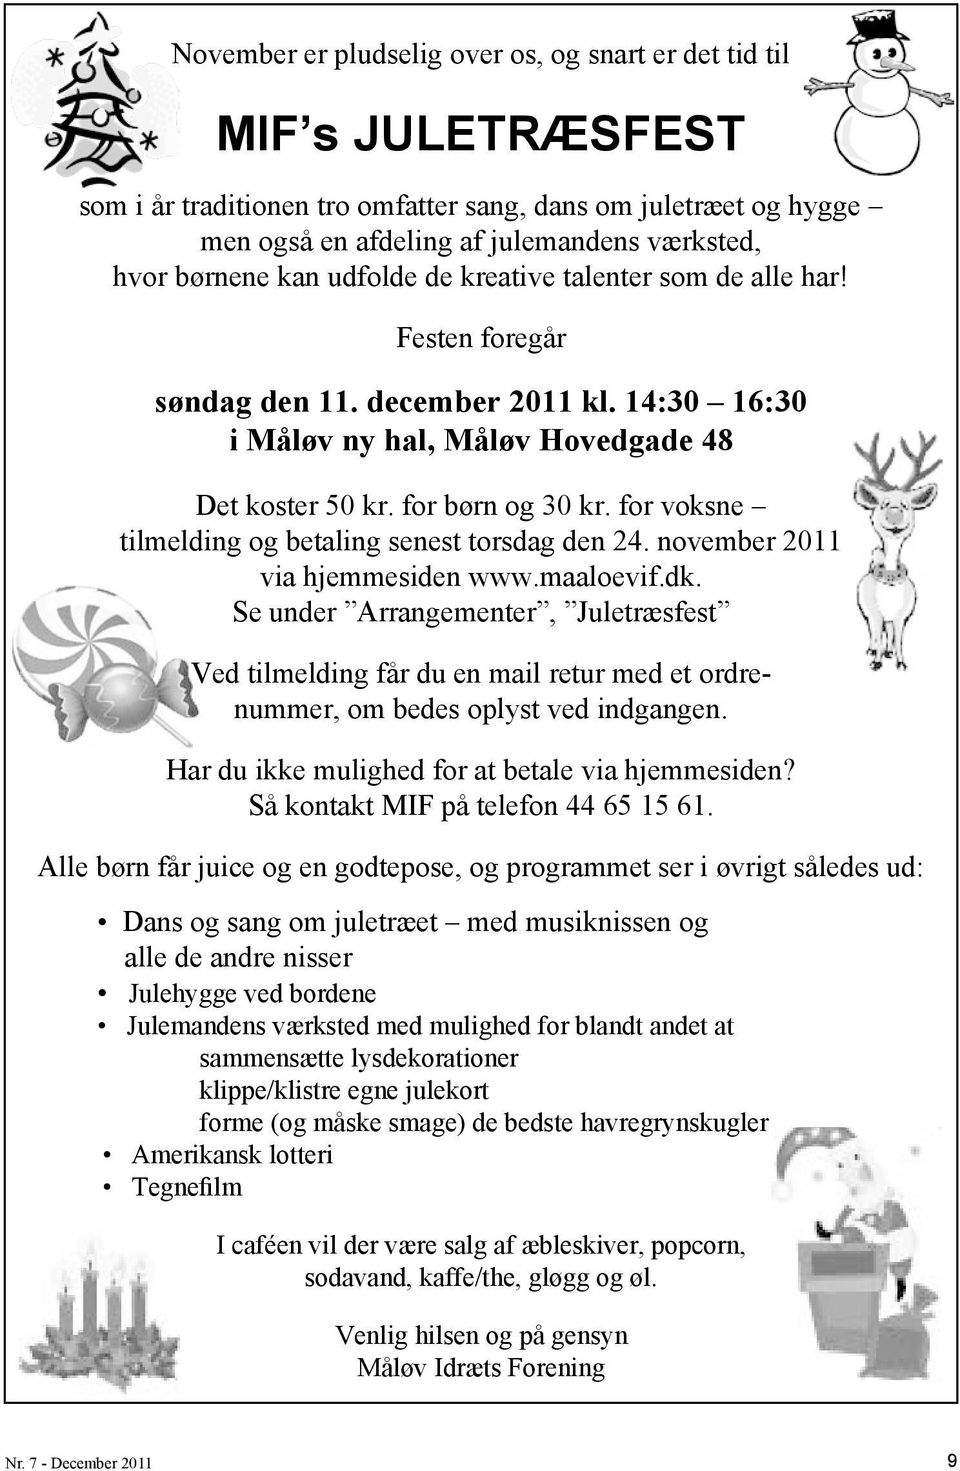 for voksne tilmelding og betaling senest torsdag den 24. november 2011 via hjemmesiden www.maaloevif.dk.